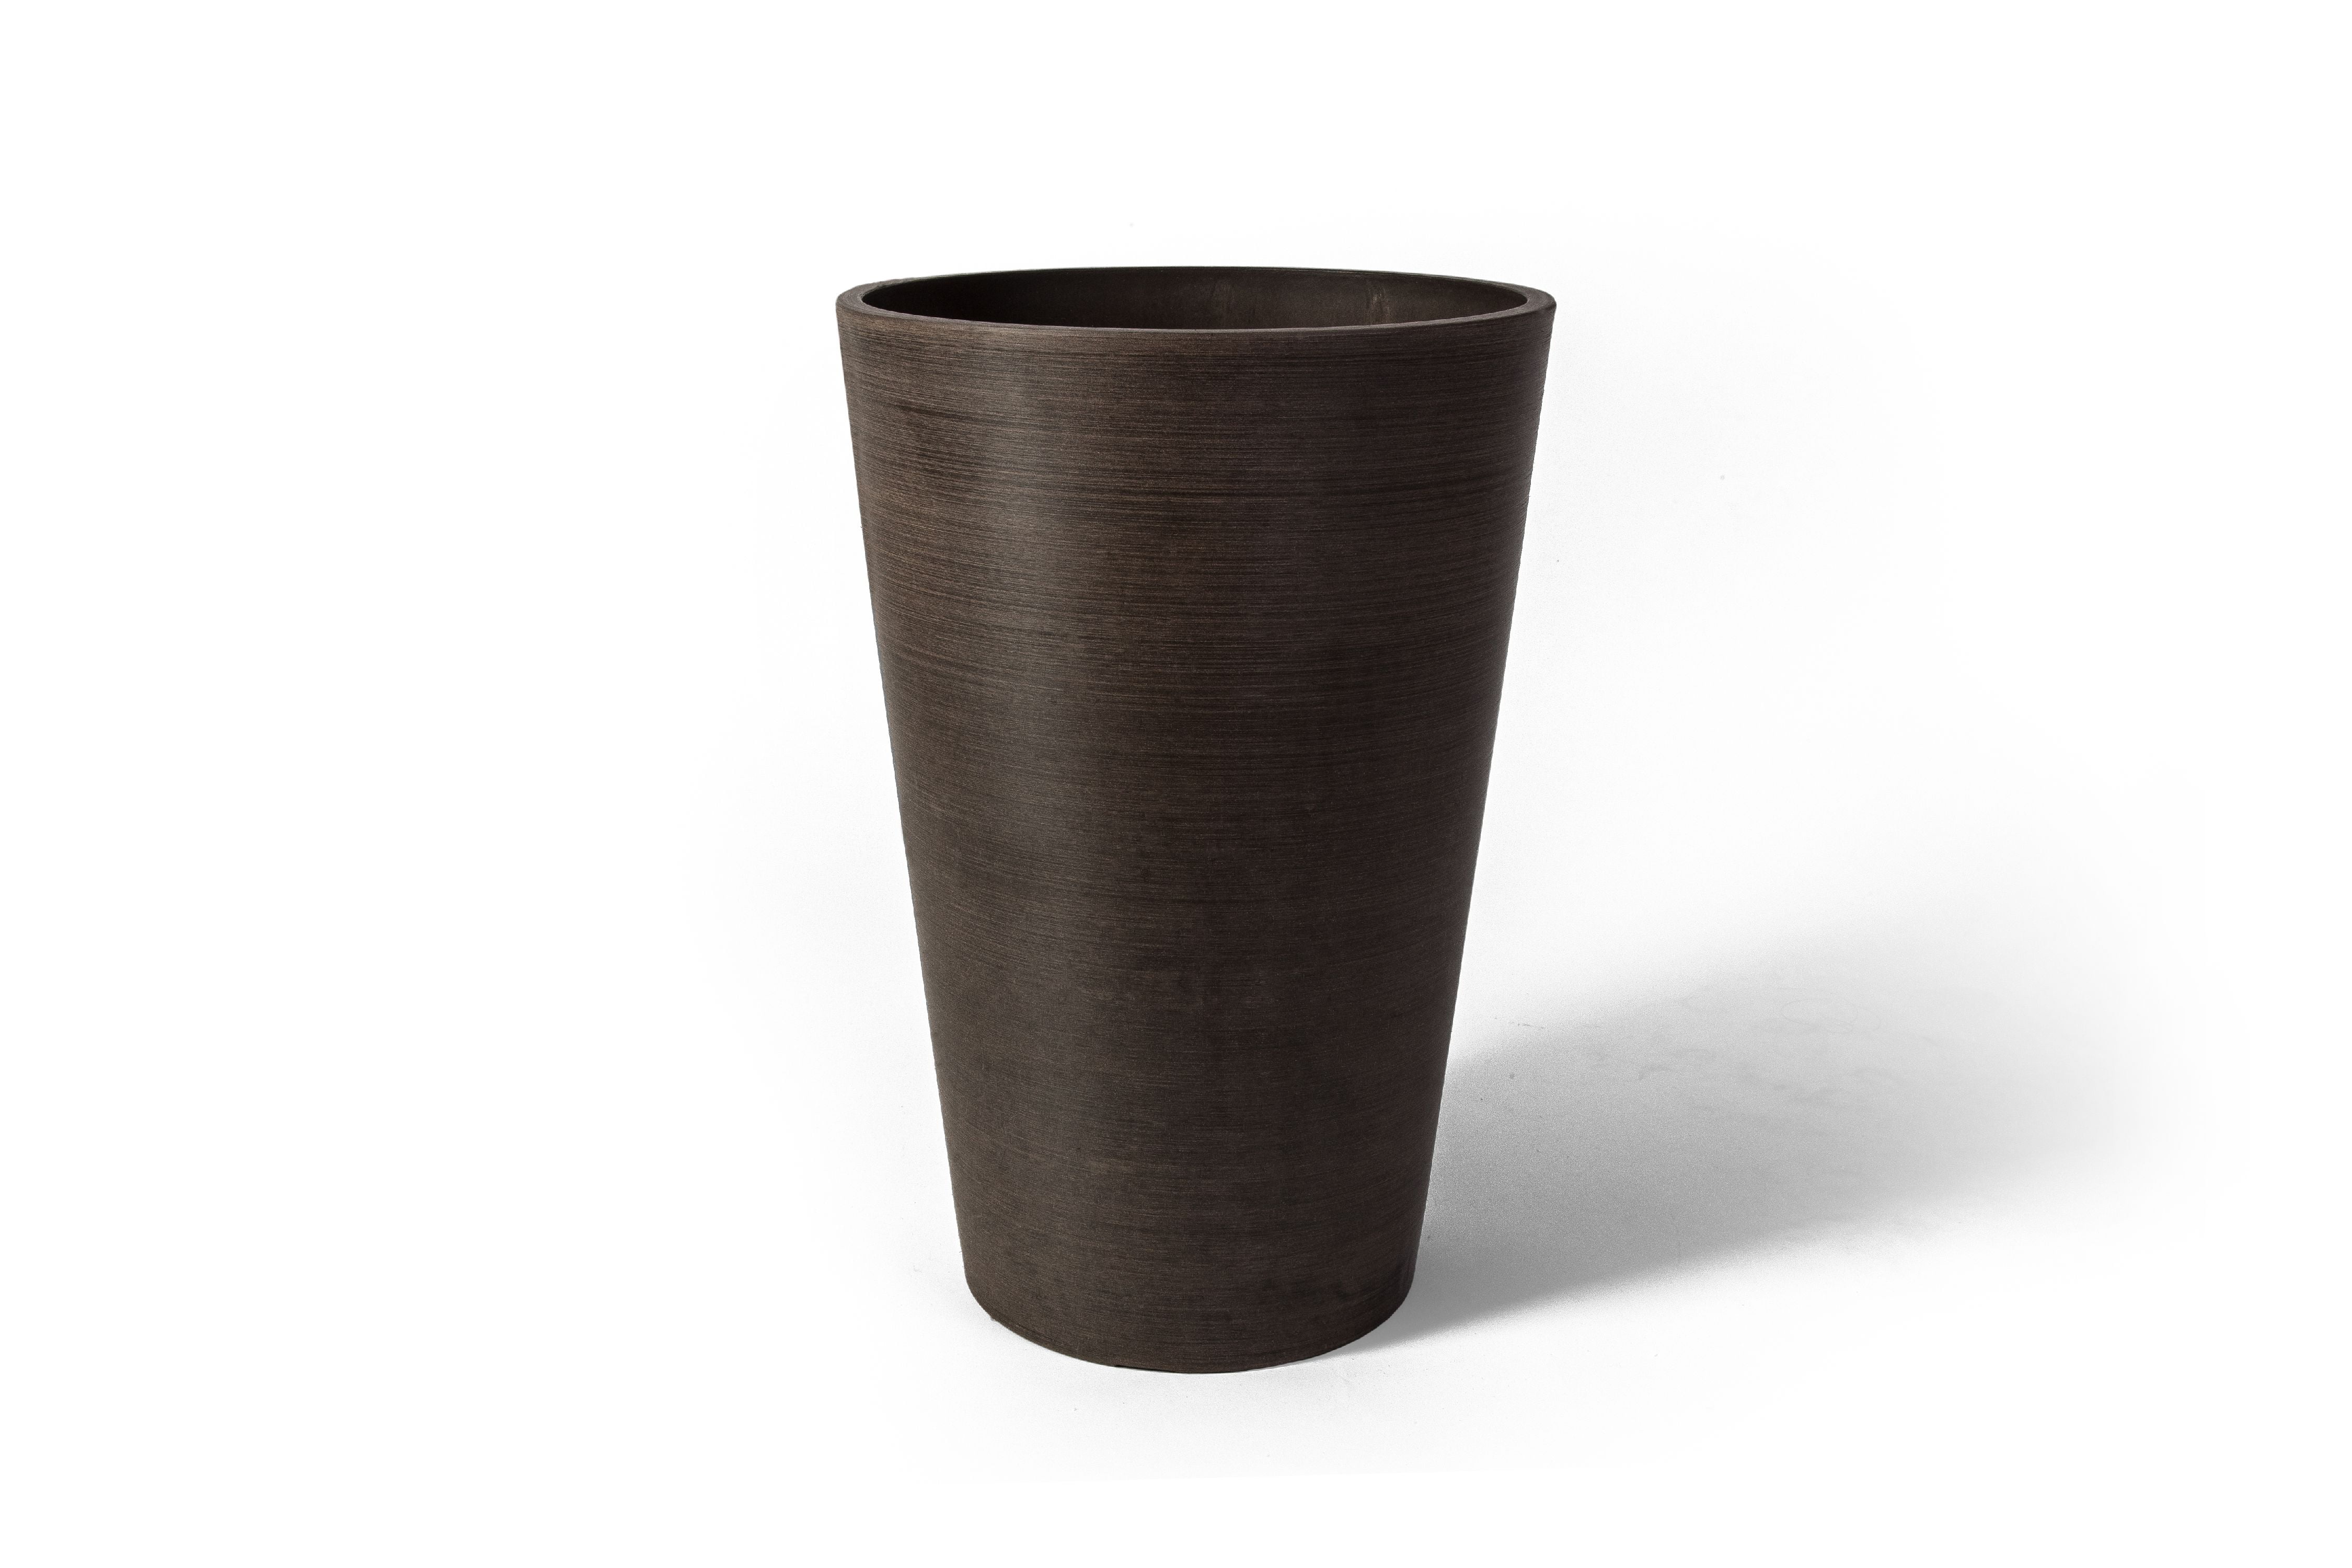 16130 18 X 12.5 X 12.5 In. Valencia Round Planter Pot, Textured Brown